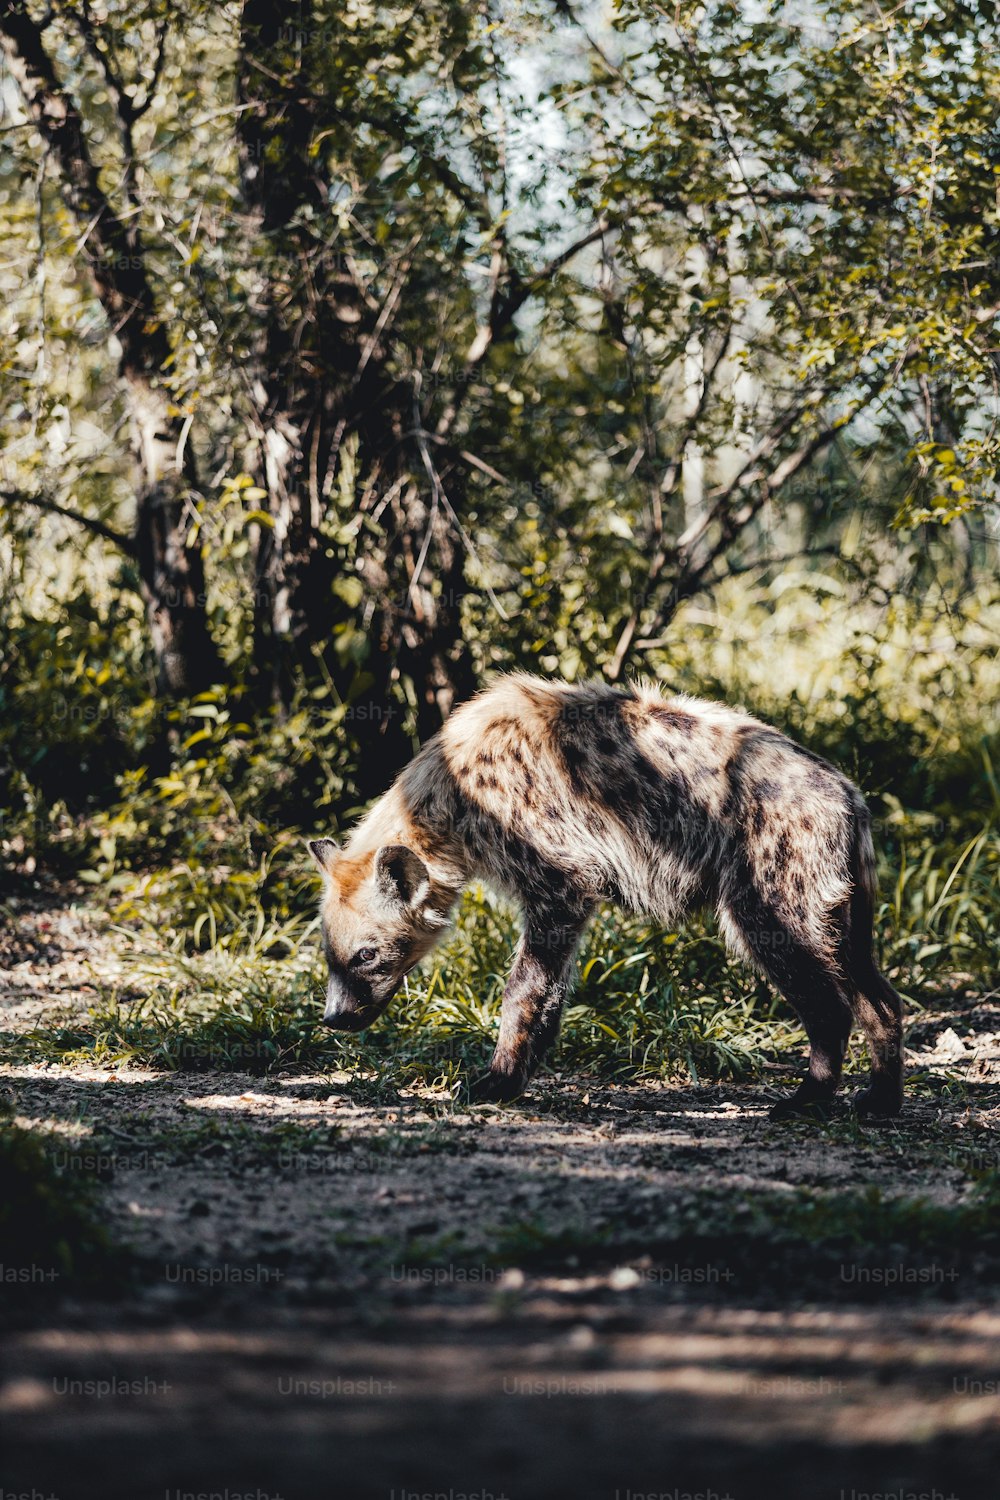 Una hiena caminando en la hierba